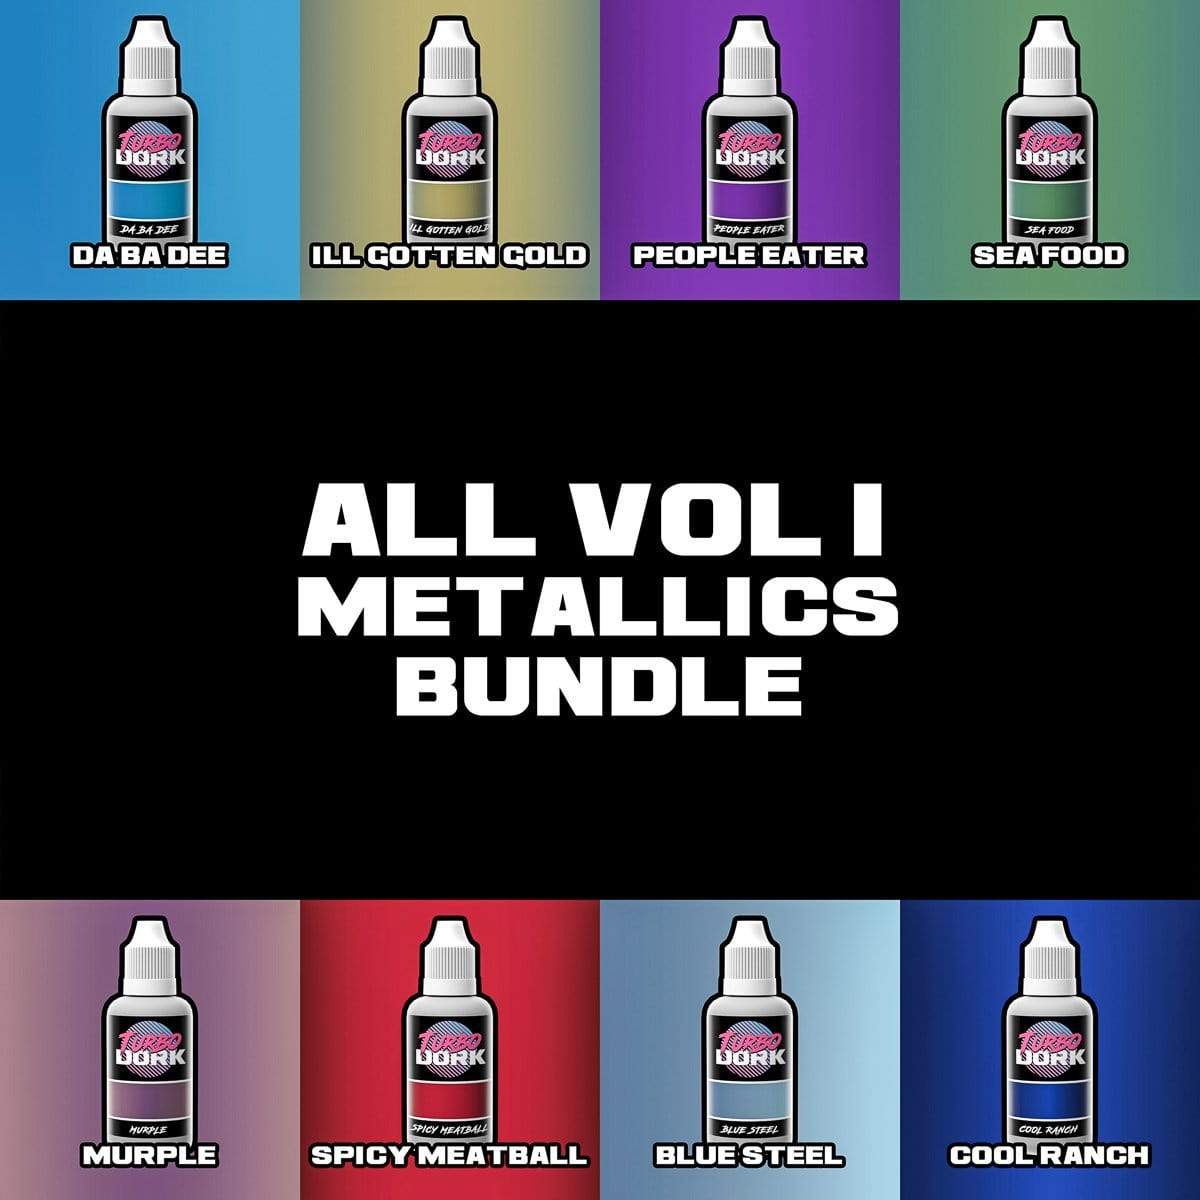 Volume 1 Metallic Acrylic Paints Bundle  Turbo Dork Exit 23 Games Volume 1 Metallic Acrylic Paints Bundle